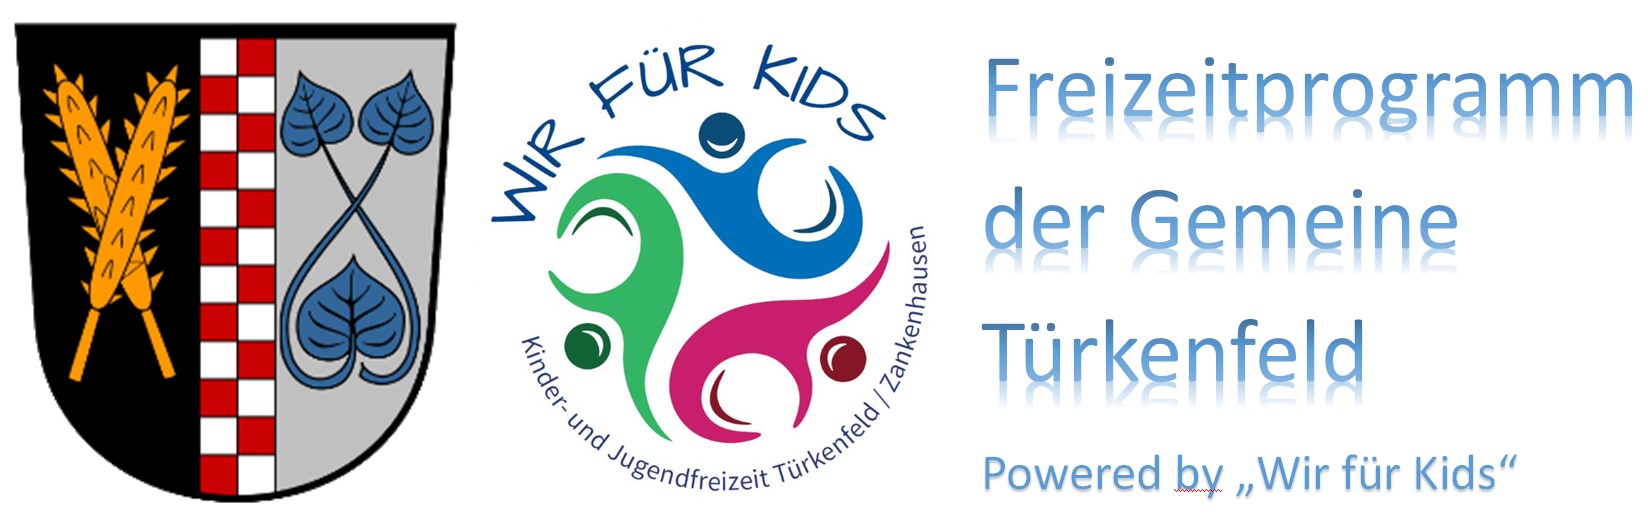 Freizeitprogramm der Gemeinde Türkenfeld